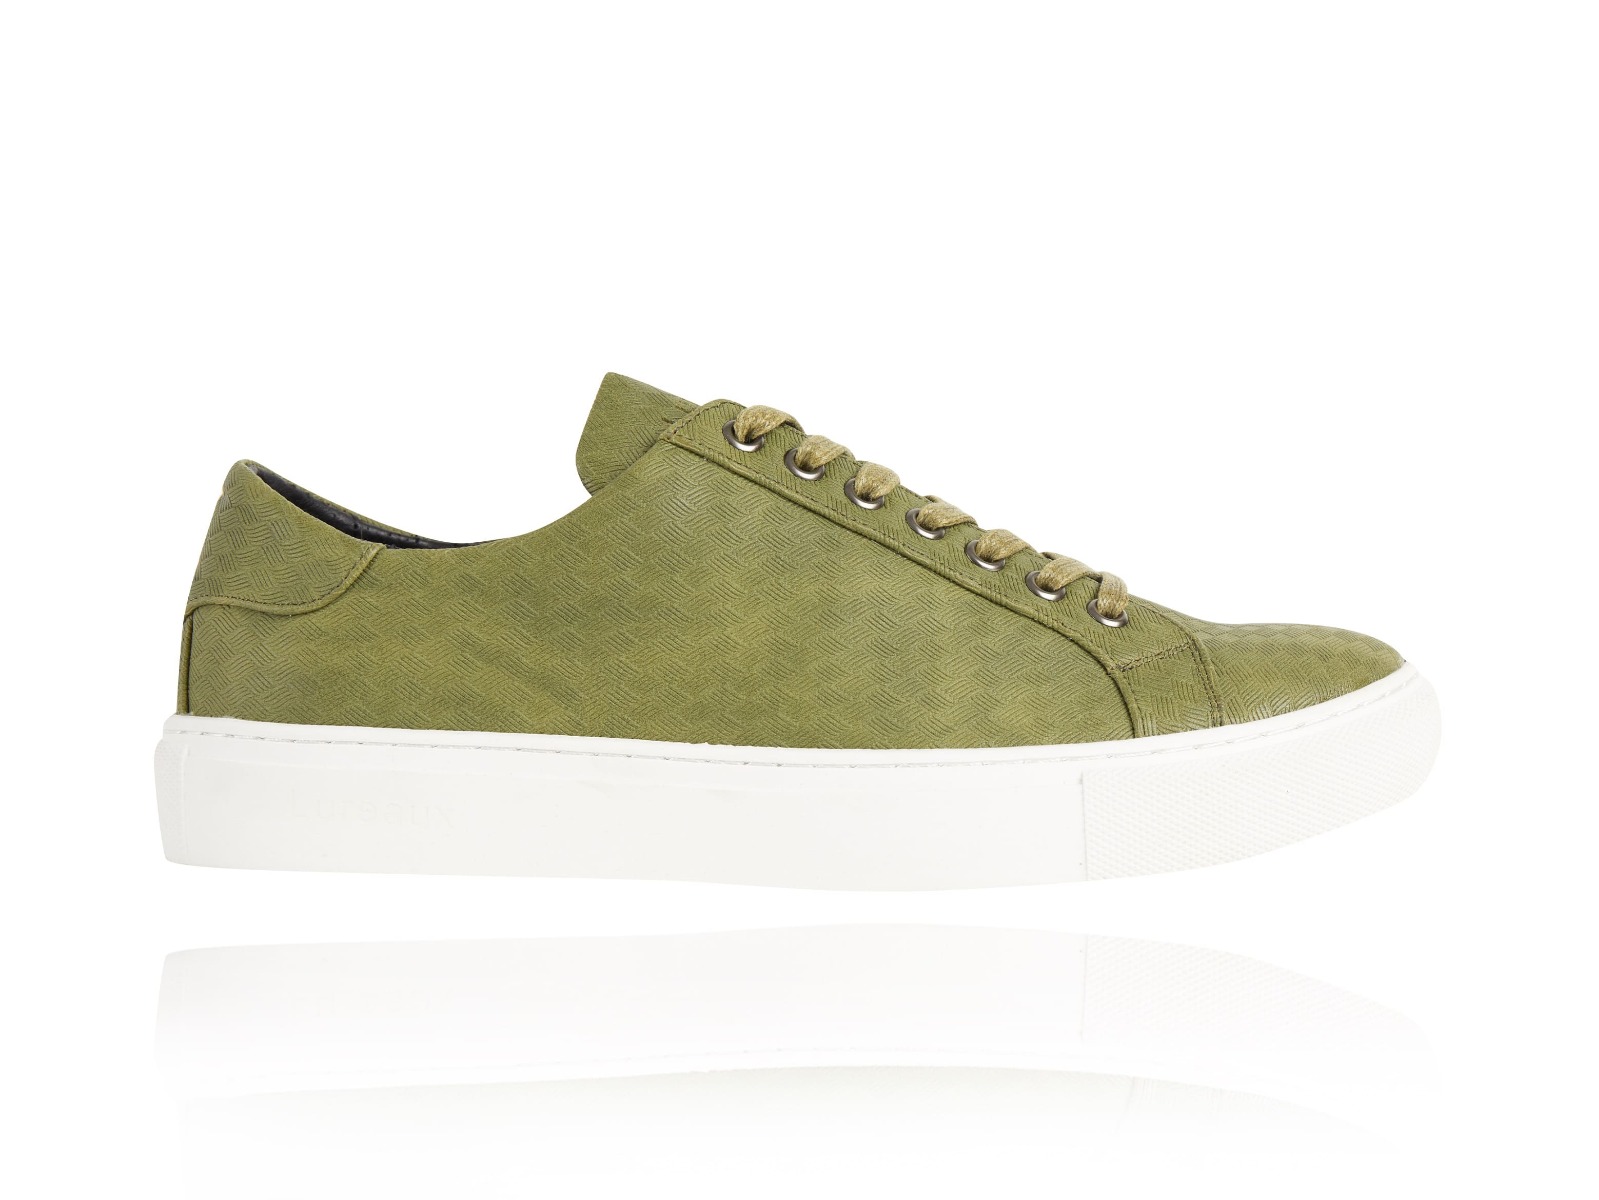 Woven Green Sneakers - Lureaux - Handgemaakte Nette Schoenen Voor Heren